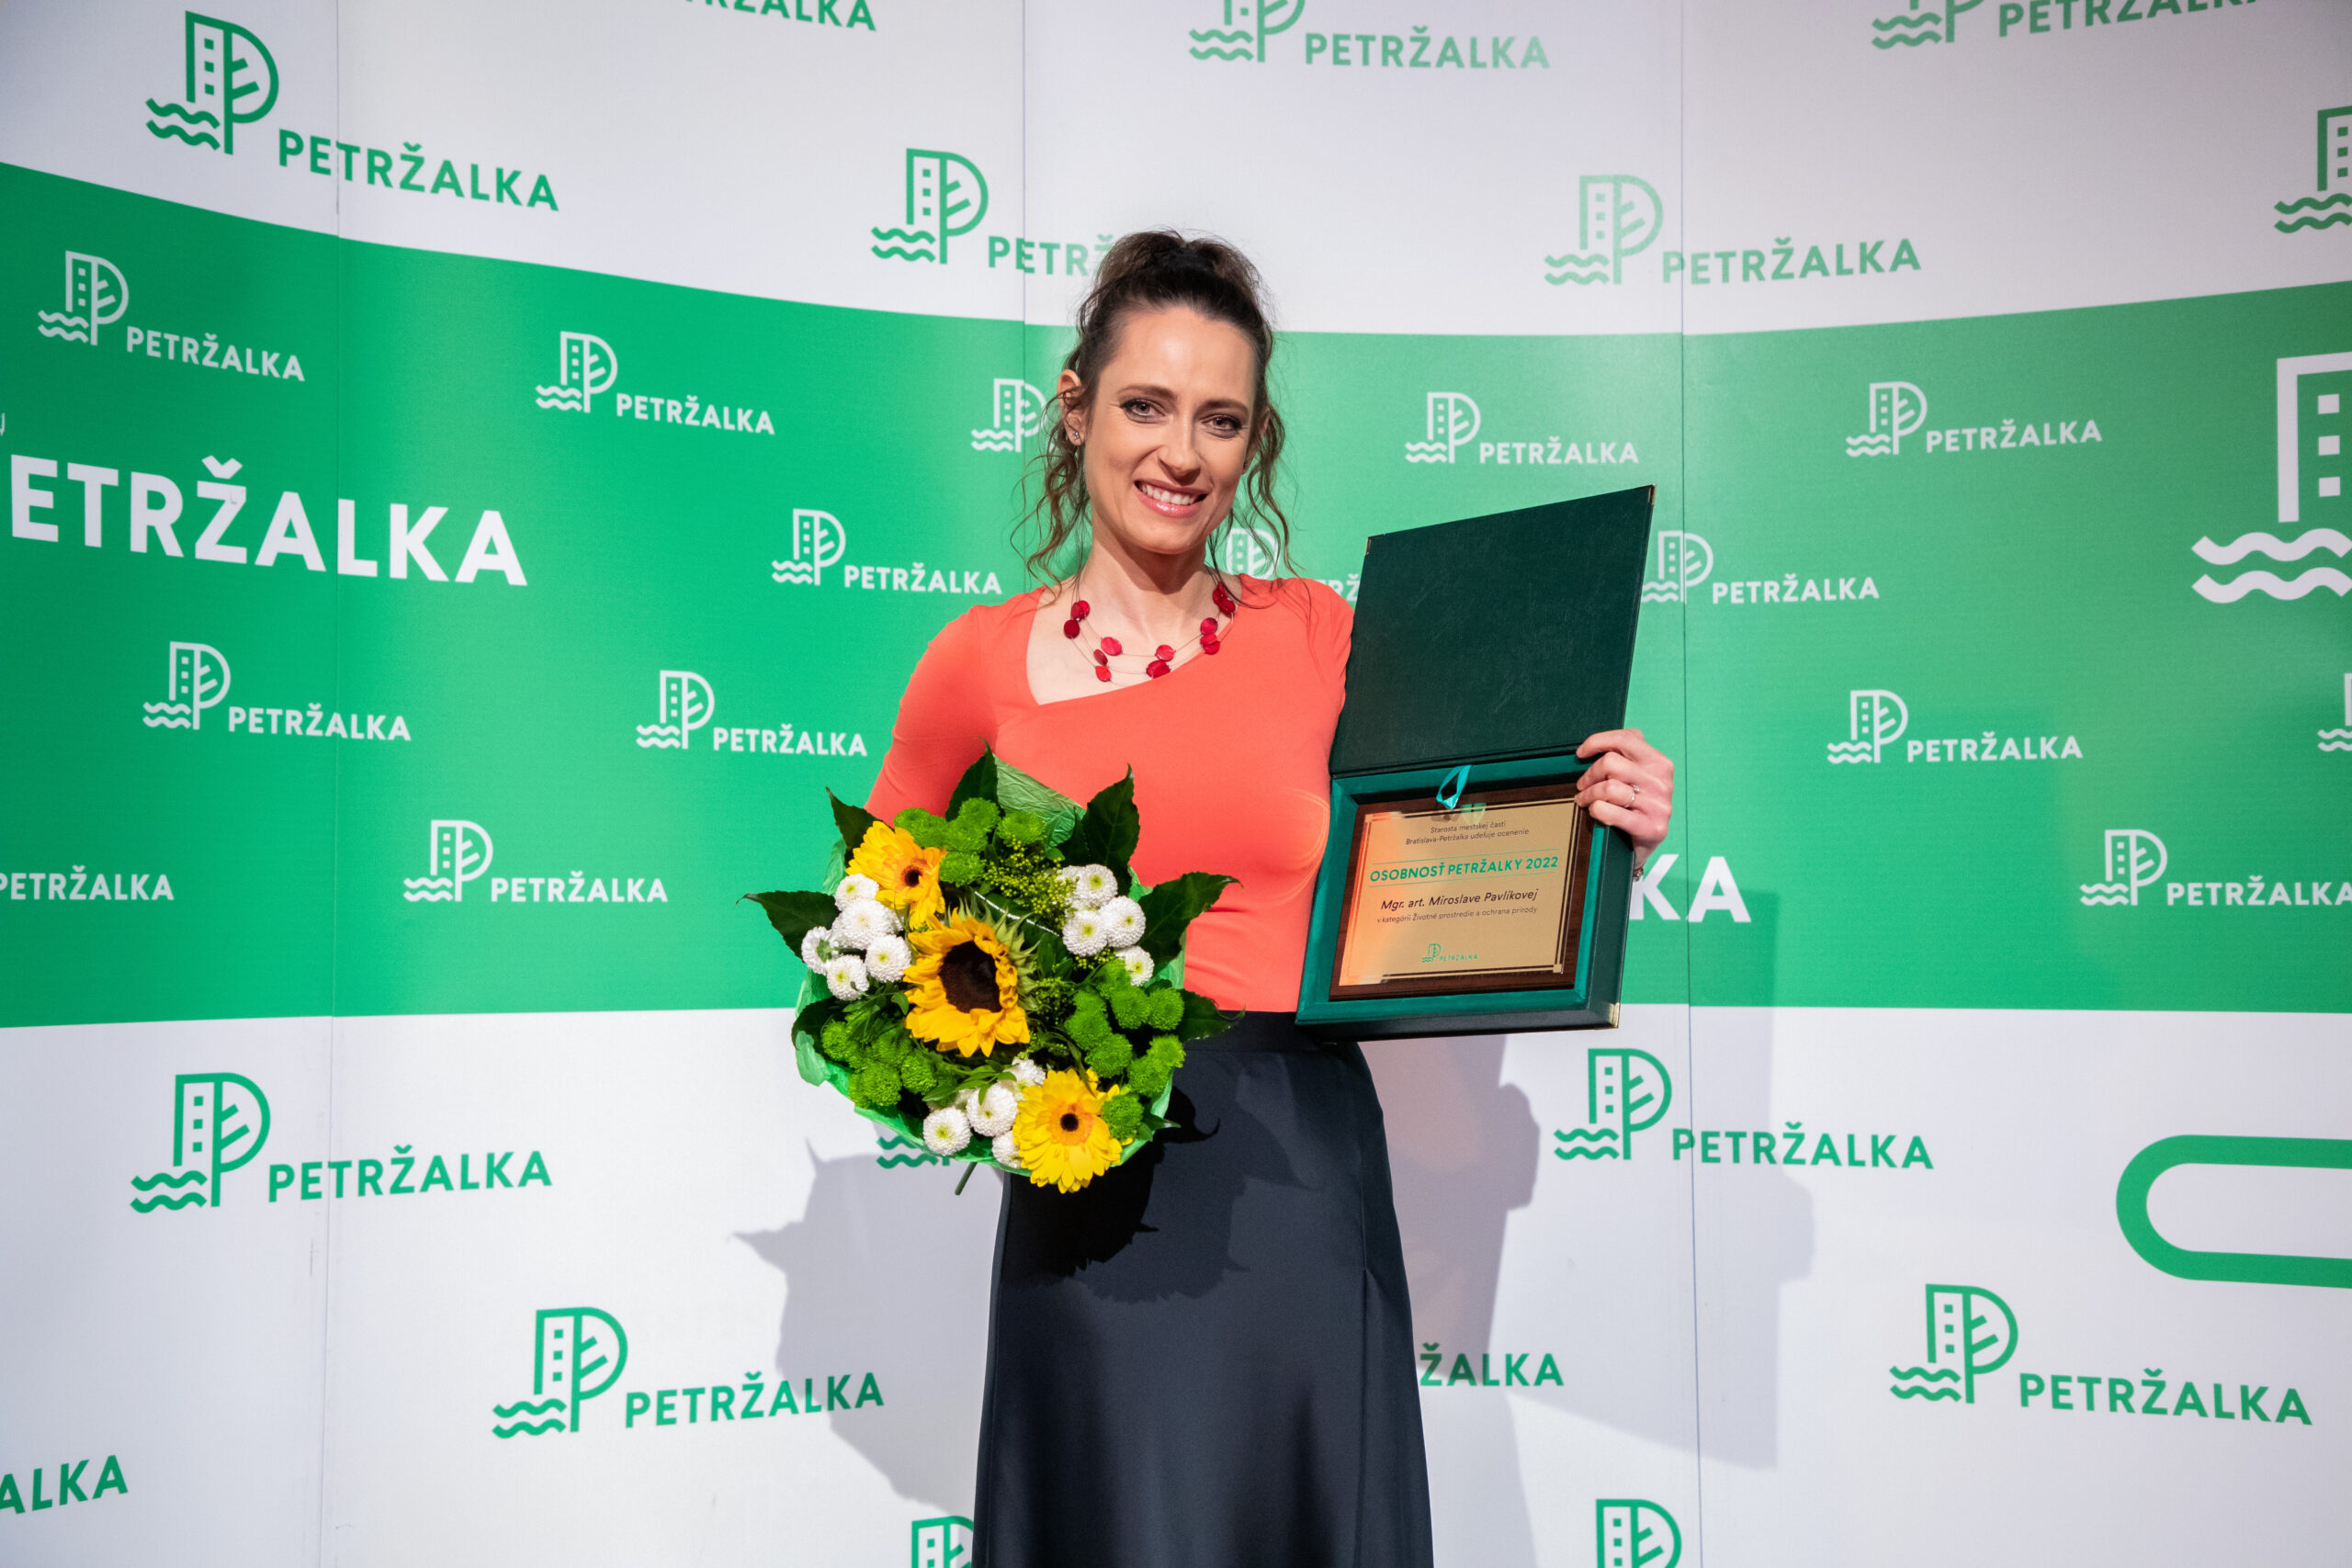 Miroslava Pavlíková